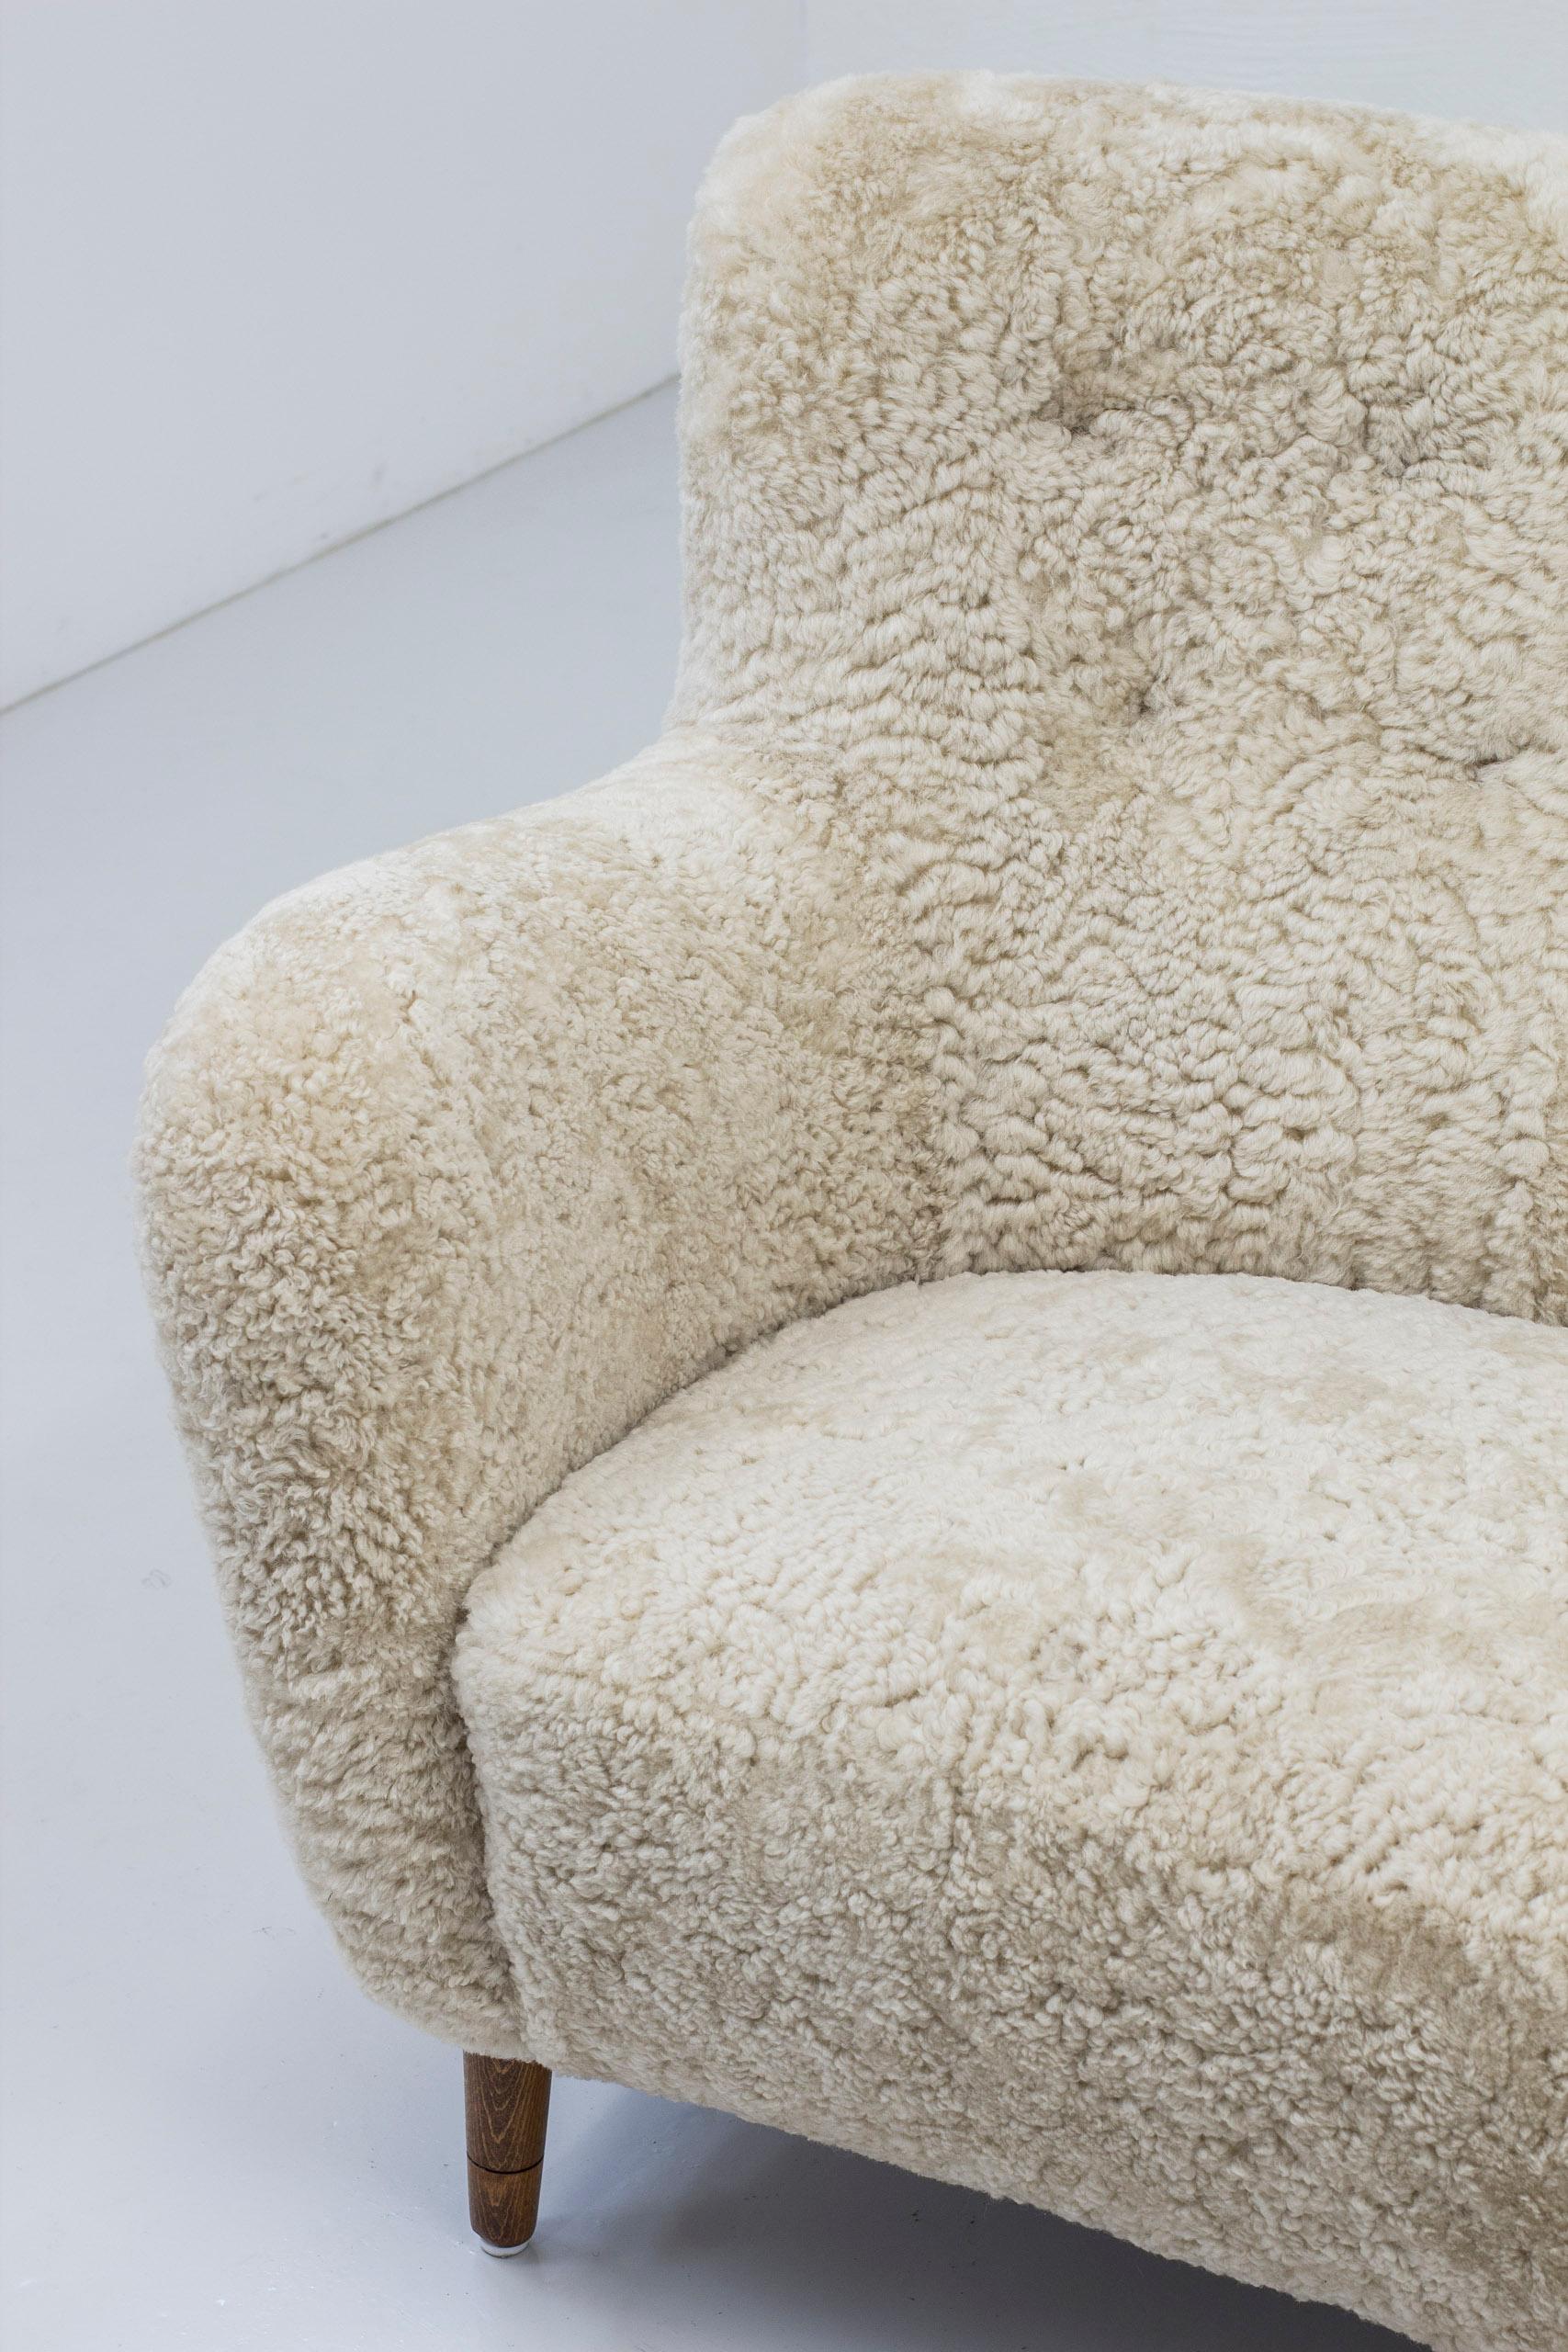 Sheepskin Danish Modern Sofa with Sheep Skin in the Manner of Finn Juhl